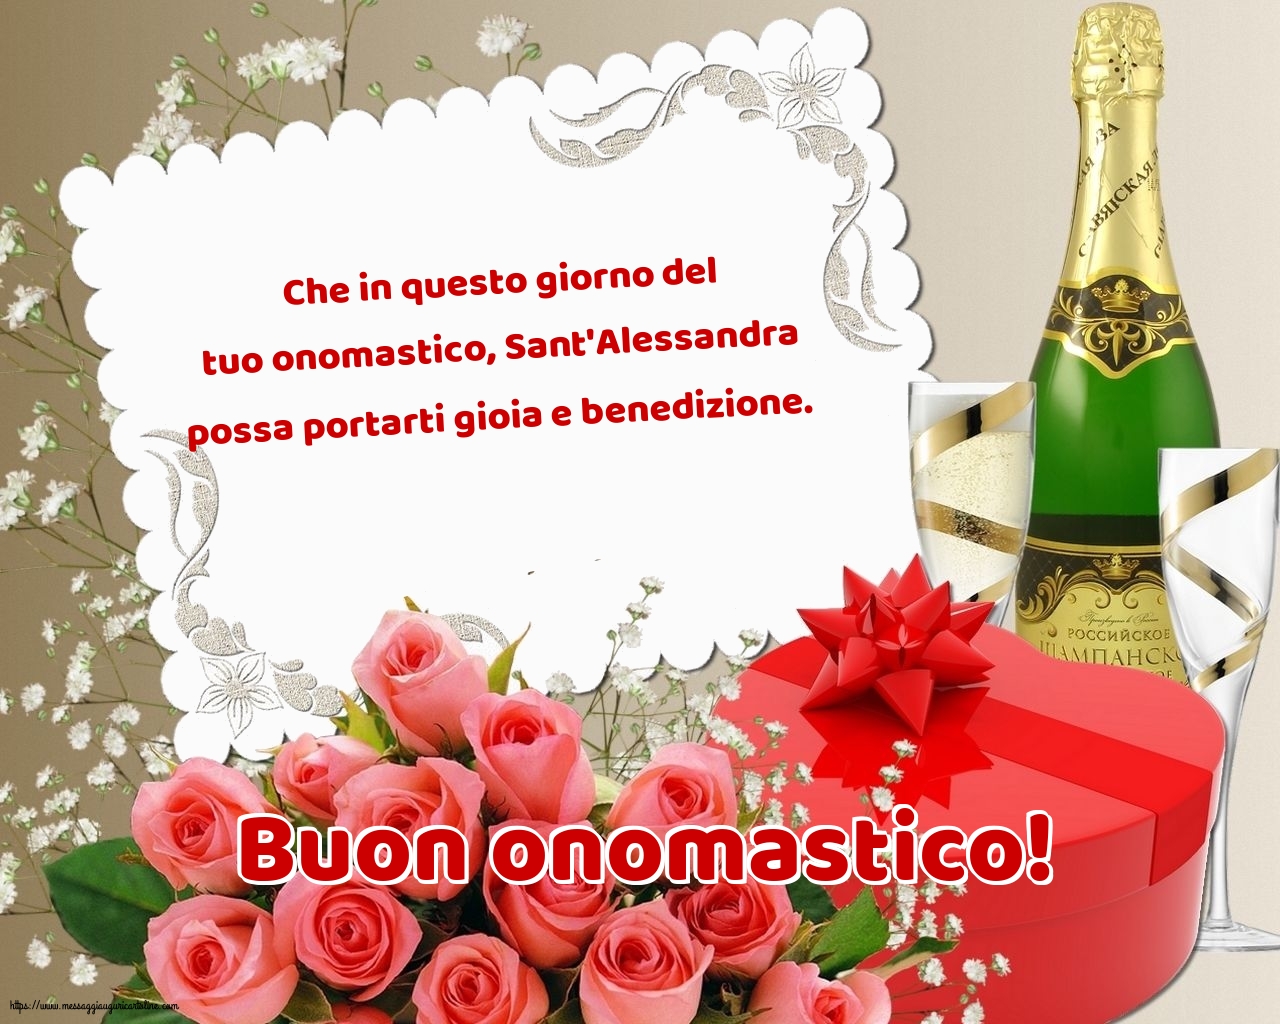 Sant'Alessandra Buon onomastico!